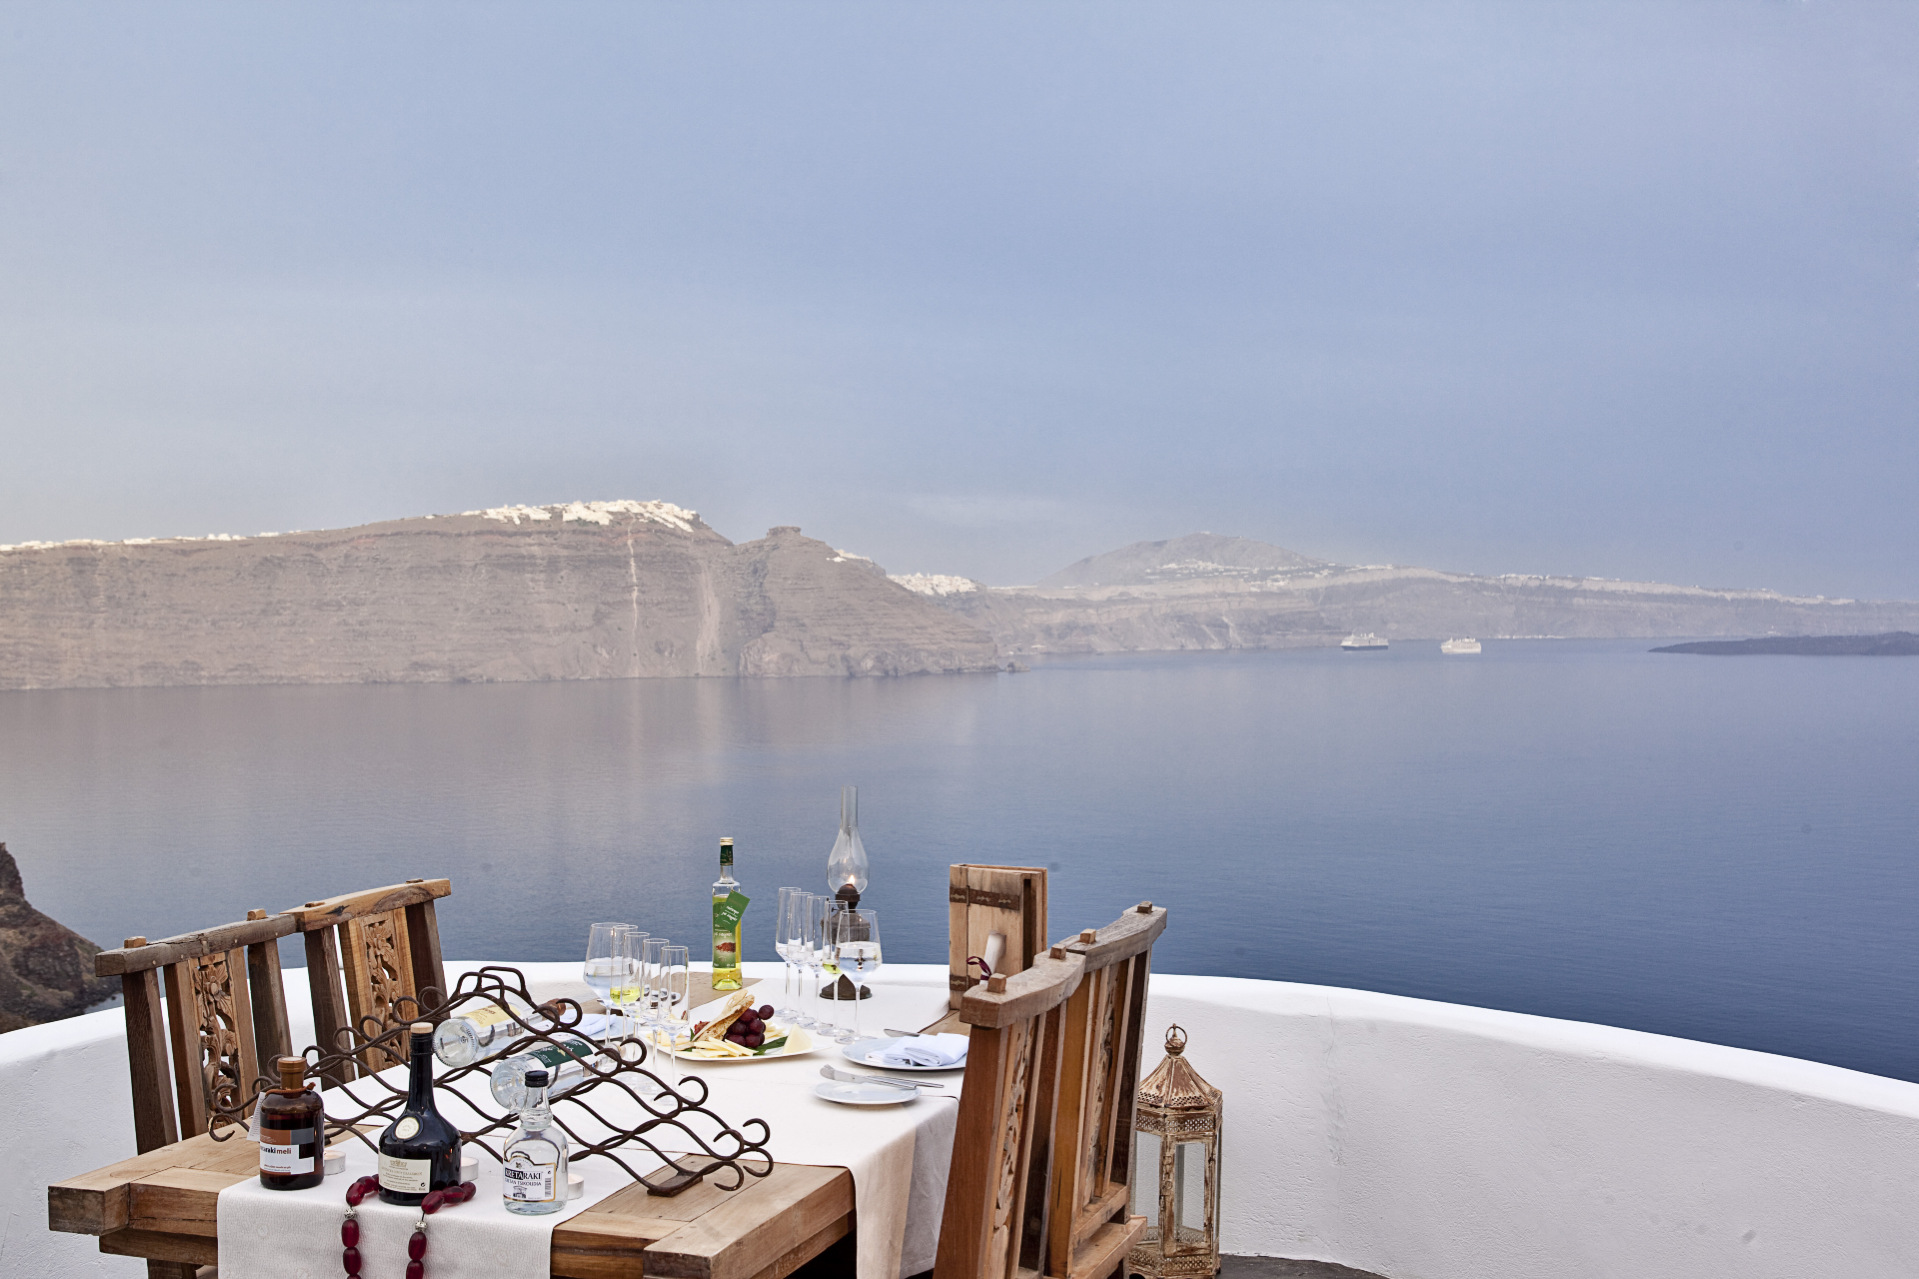 Το εστιατόριο με την πιο εντυπωσιακή θέα στον κόσμο είναι ελληνικό - Εικόνα 2